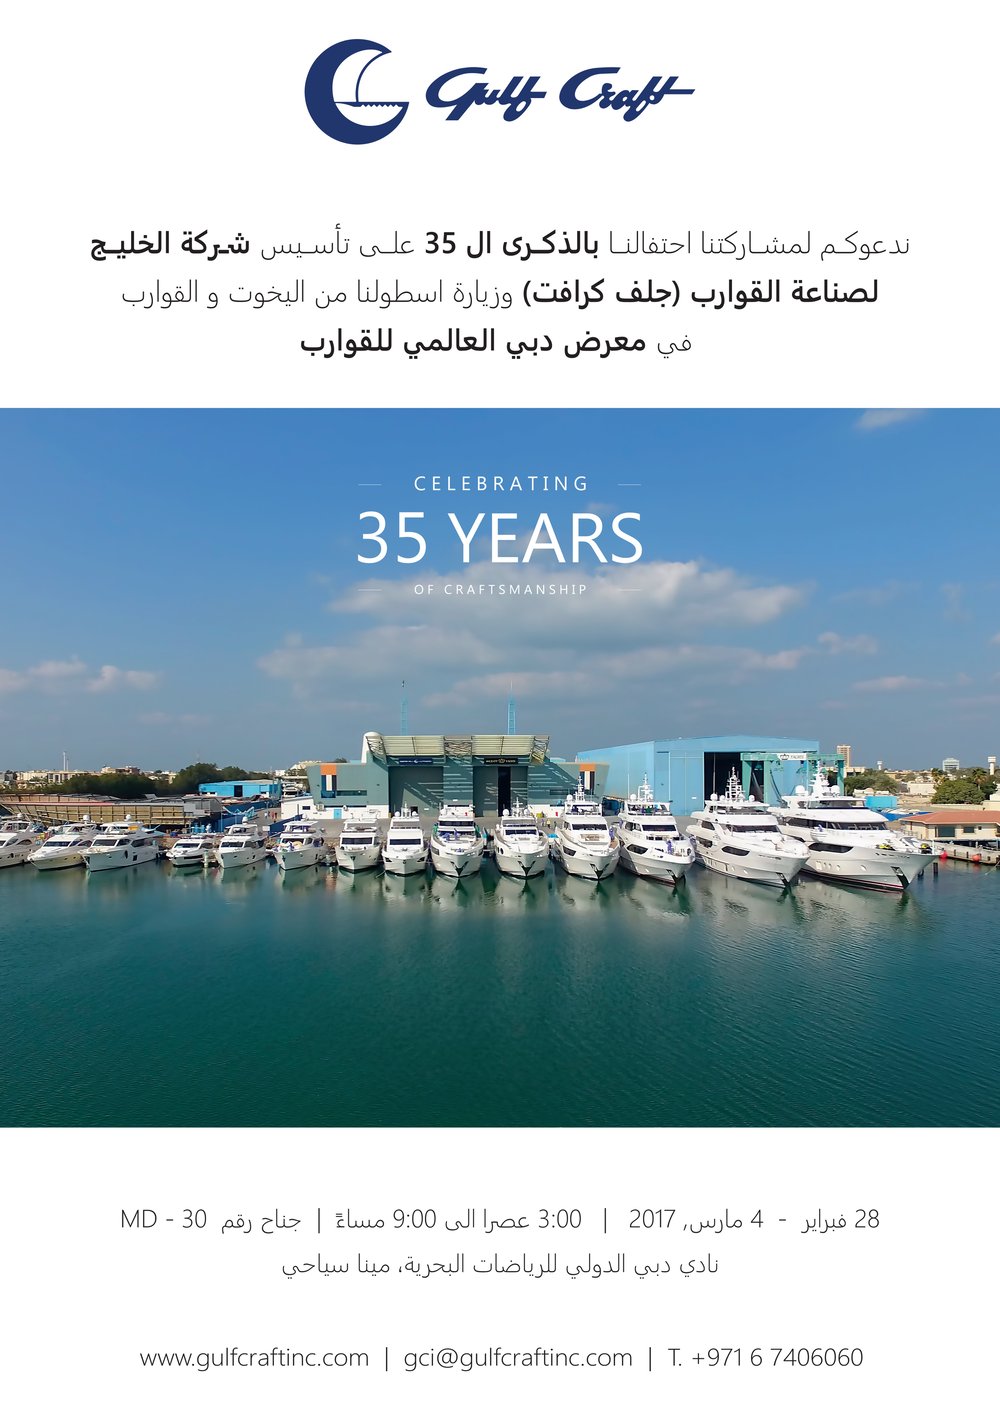 Gulf Craft, Dubai Boat Show, Arabic.jpg